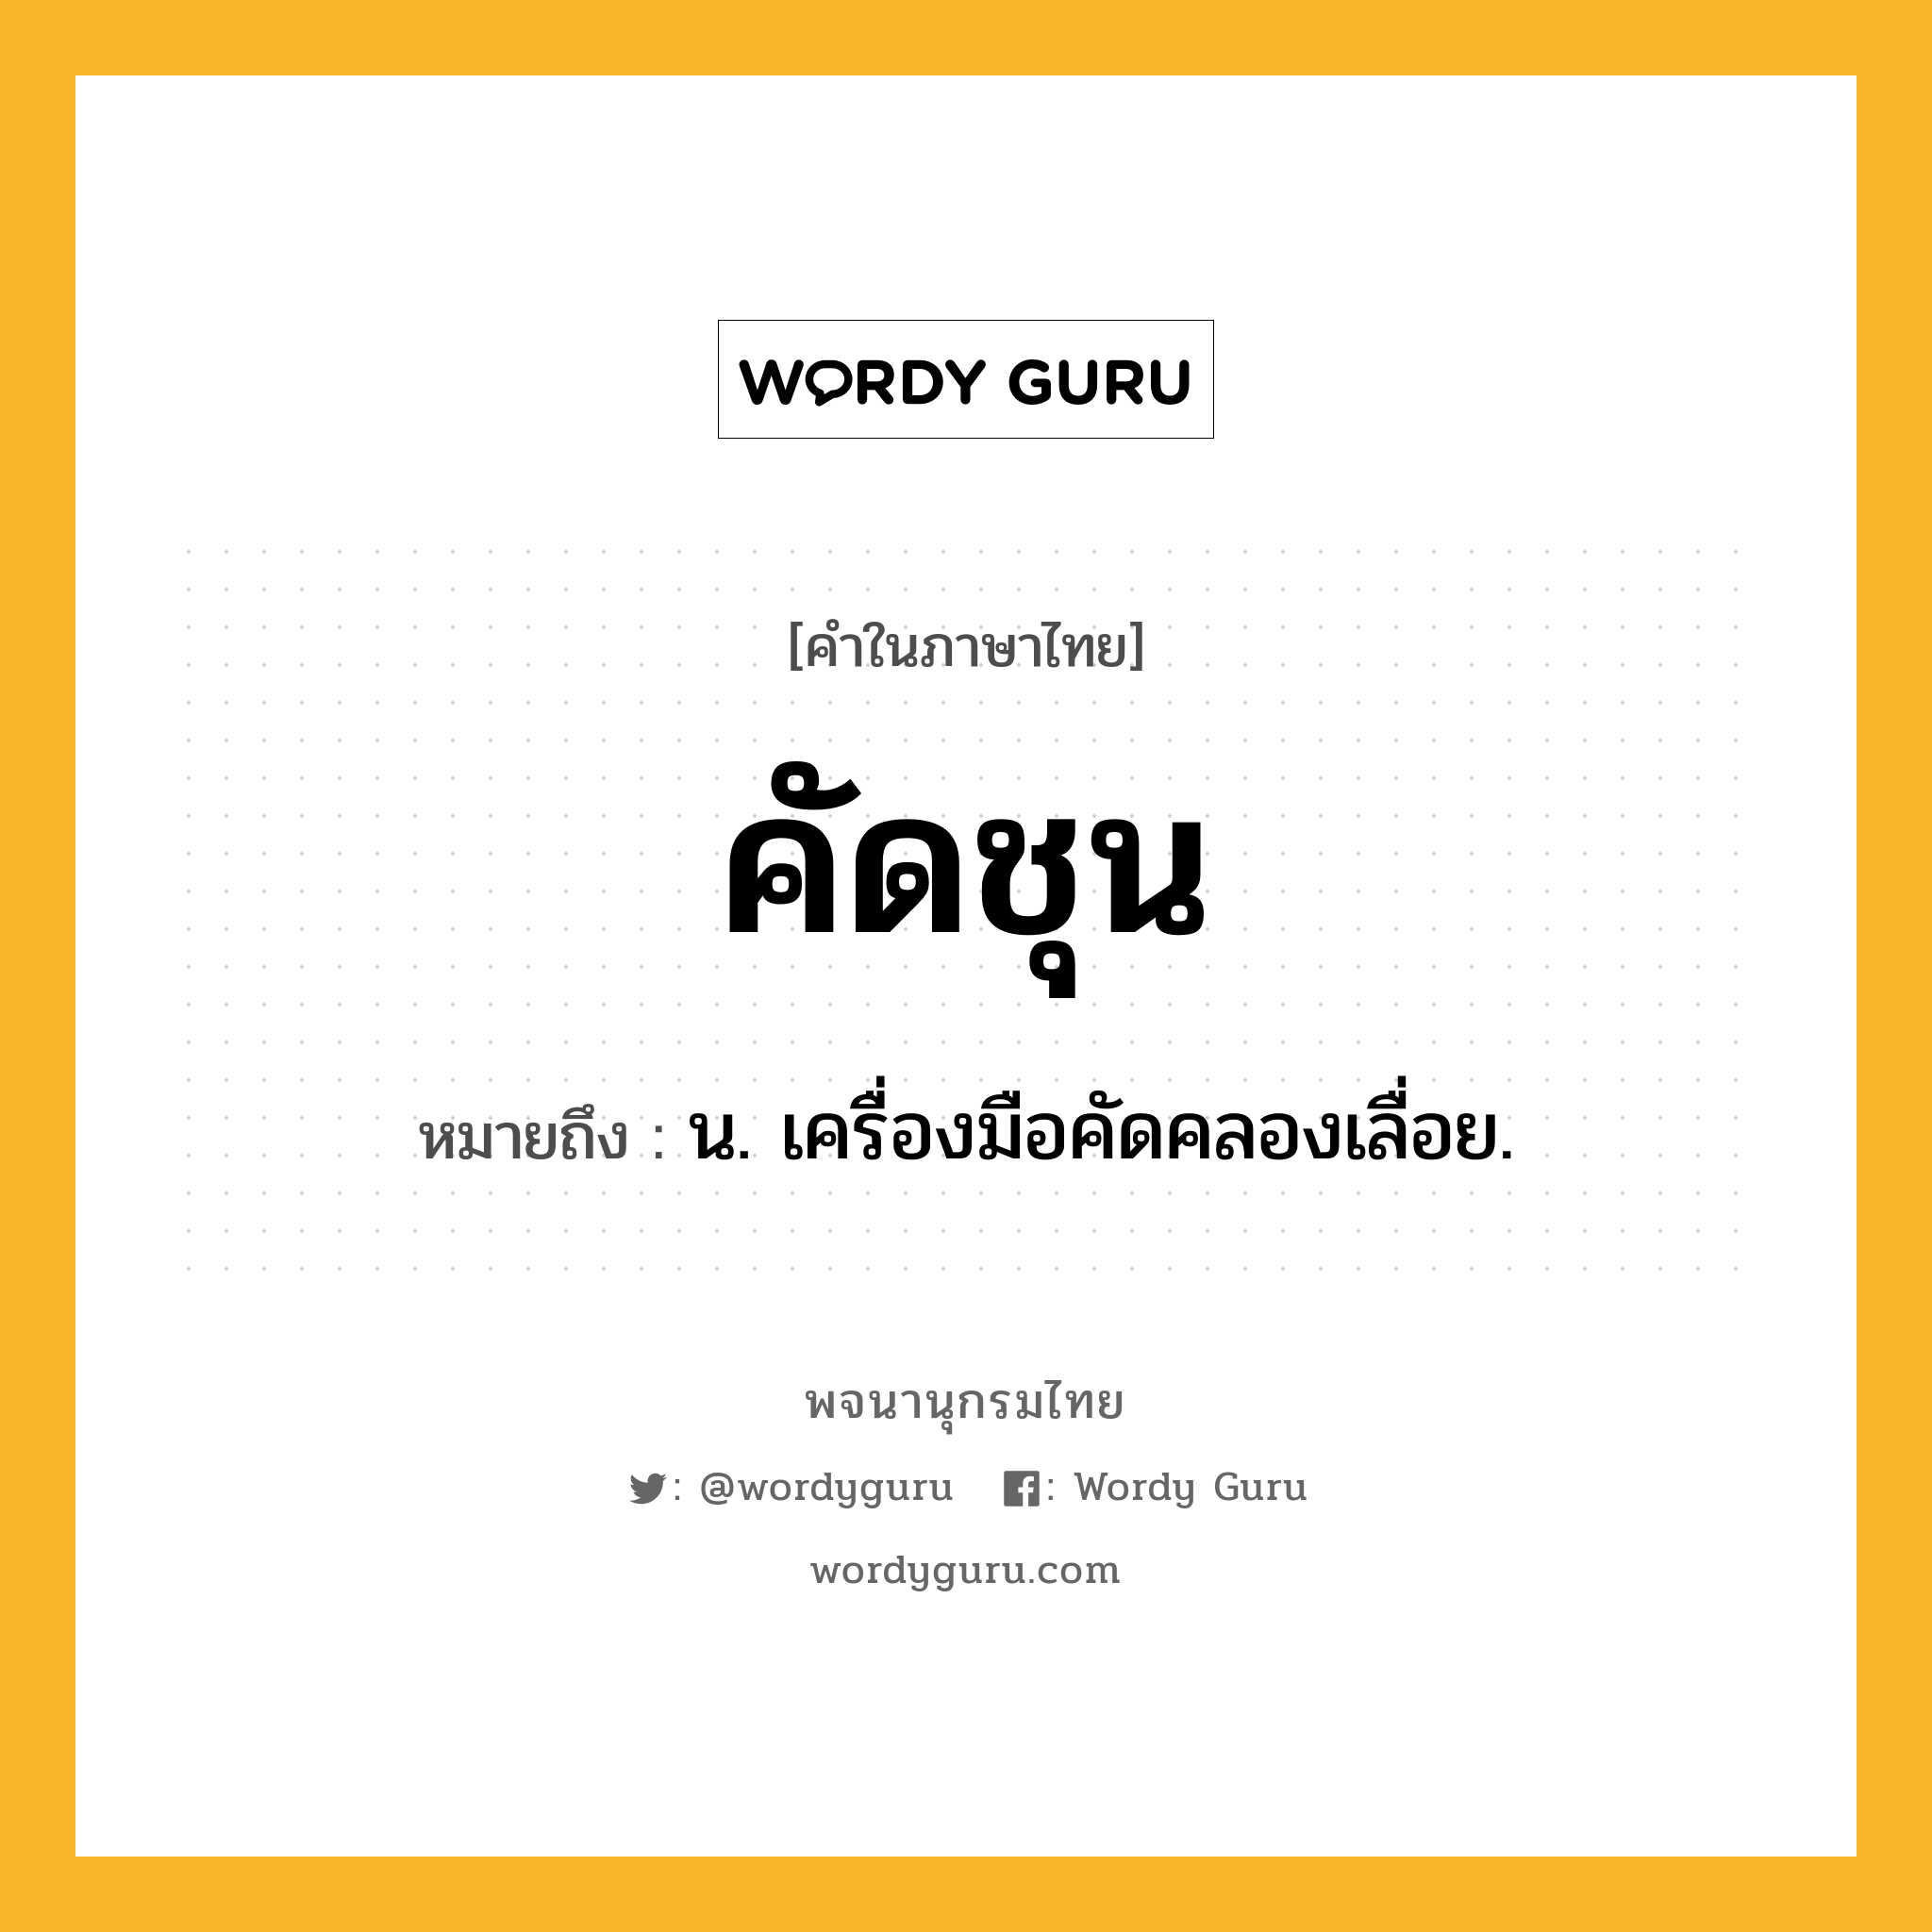 คัดชุน ความหมาย หมายถึงอะไร?, คำในภาษาไทย คัดชุน หมายถึง น. เครื่องมือคัดคลองเลื่อย.